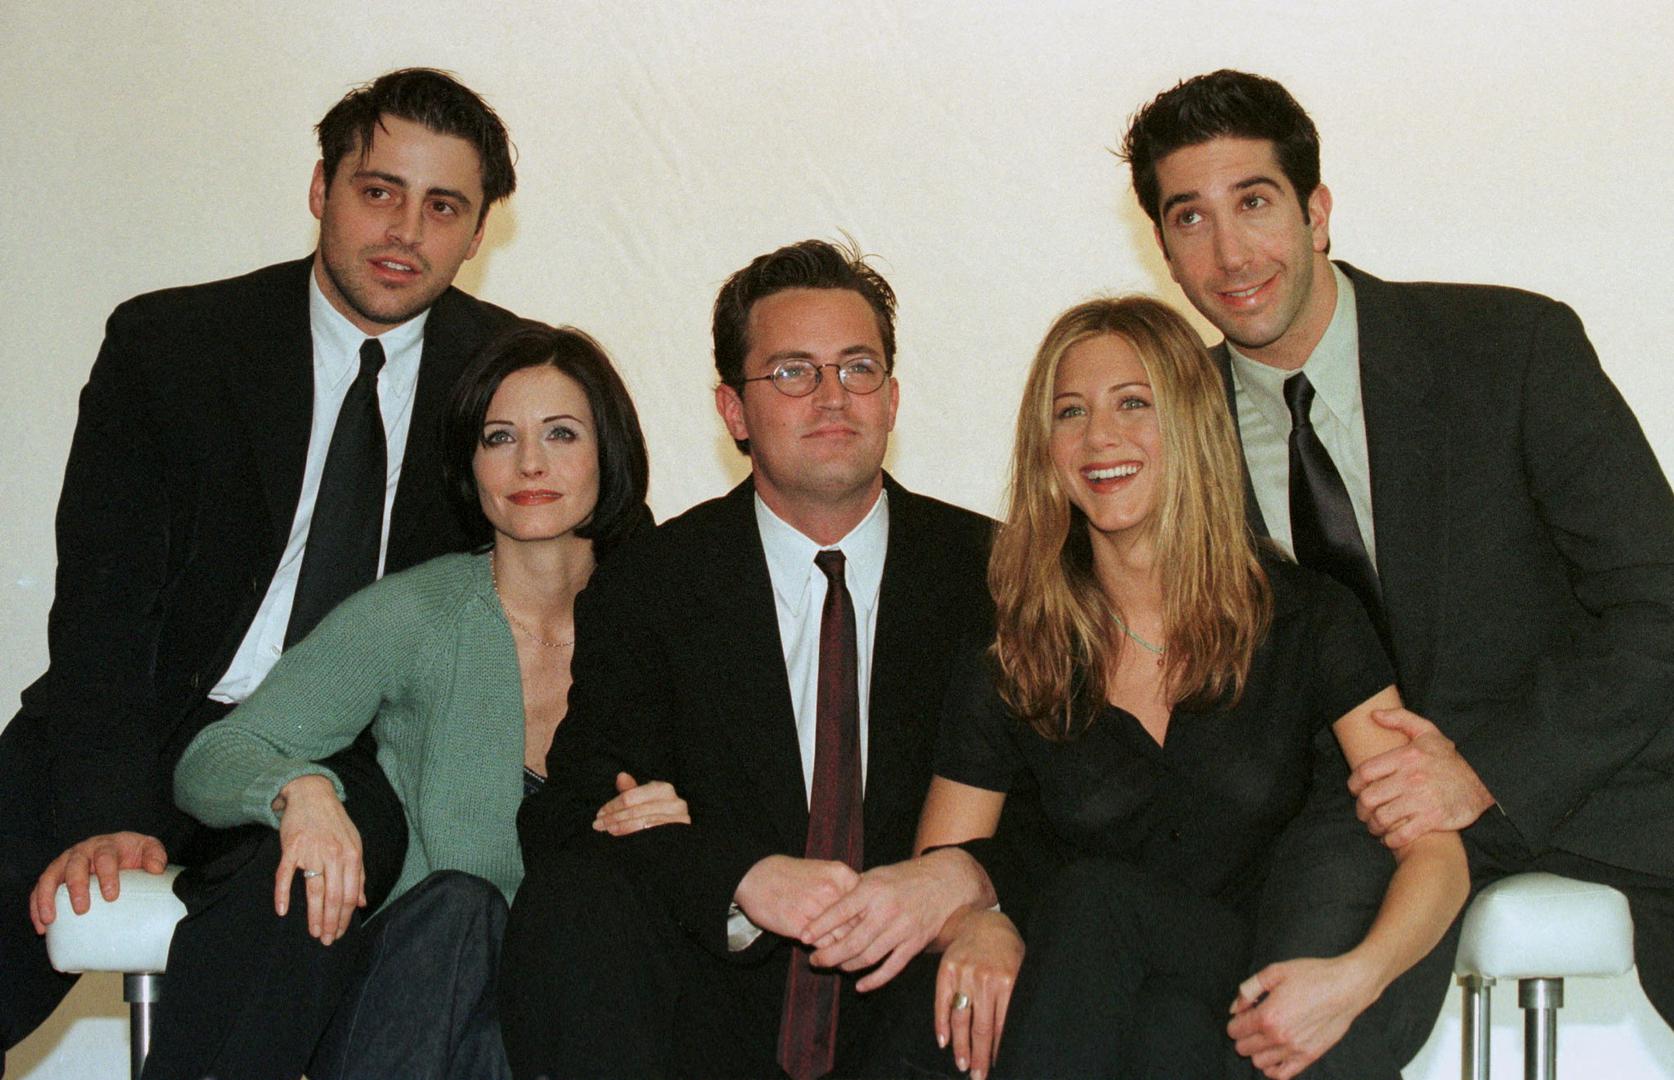 Glumačka postava američkog TV sitcoma "Prijatelji" Courteney Cox, Matt Le Blanc, Matthew Perry, David Schwimmer i Jennifer Aniston poziraju za službene fotografije u televizijskom centru Channel 4 u Londonu, 25. ožujka 1998. godine.